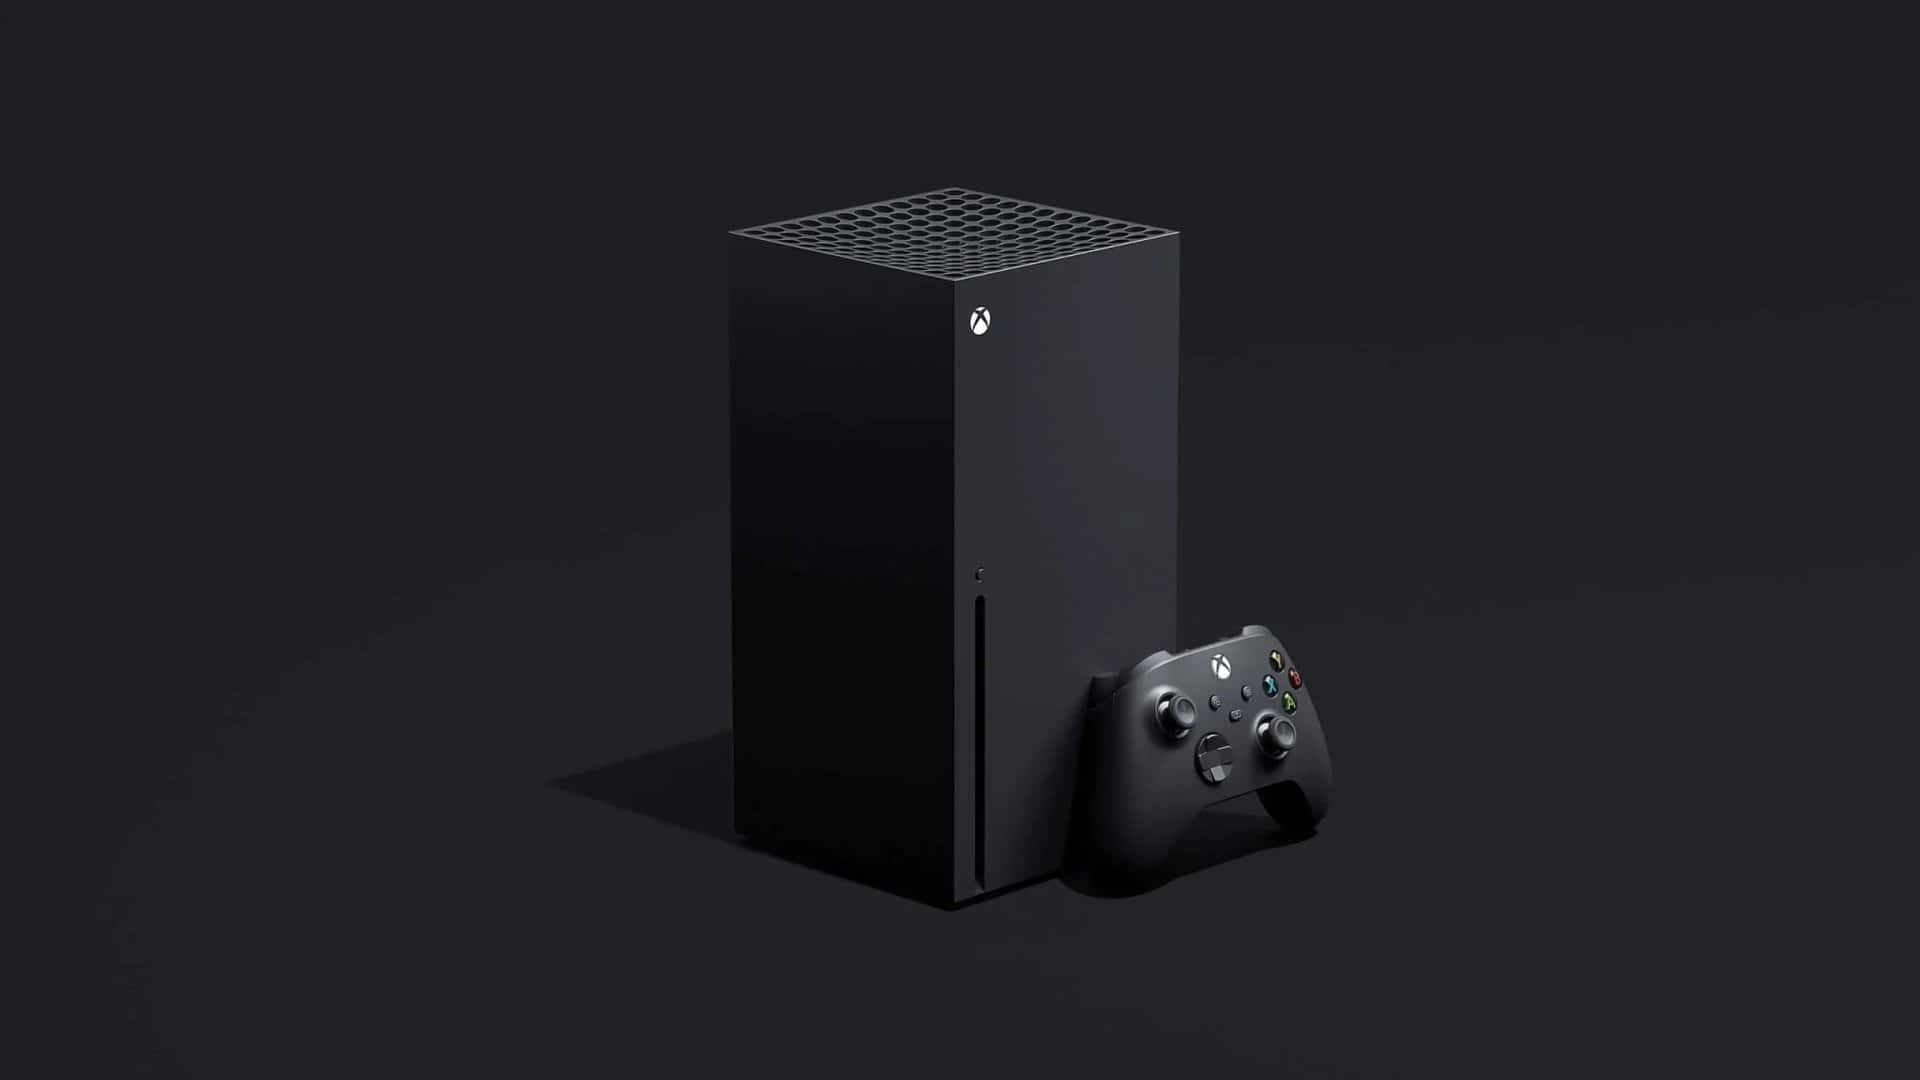 Vazam imagens de Xbox Series X sem leitor de disco e na cor branca